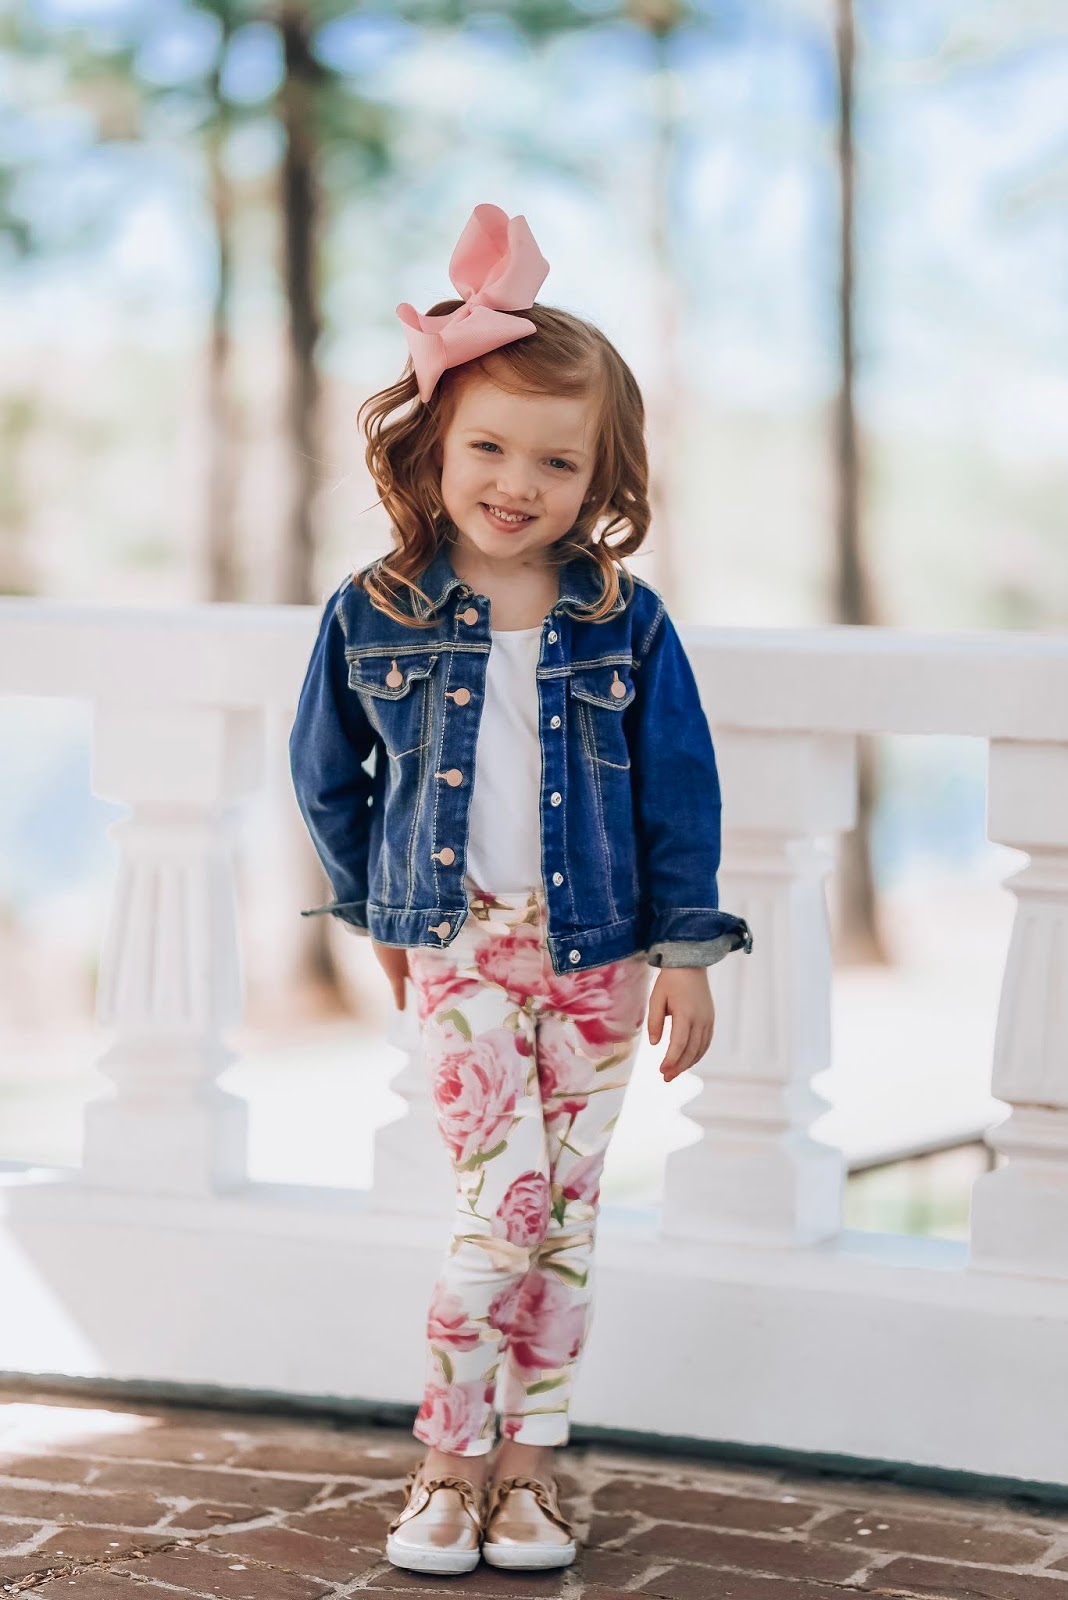 Spring Favorites with Walmart: Kids Fashion ($14 Rose Print Jeggings) - Something Delightful Blog #springfashion #affordablefashion #wedressamerica